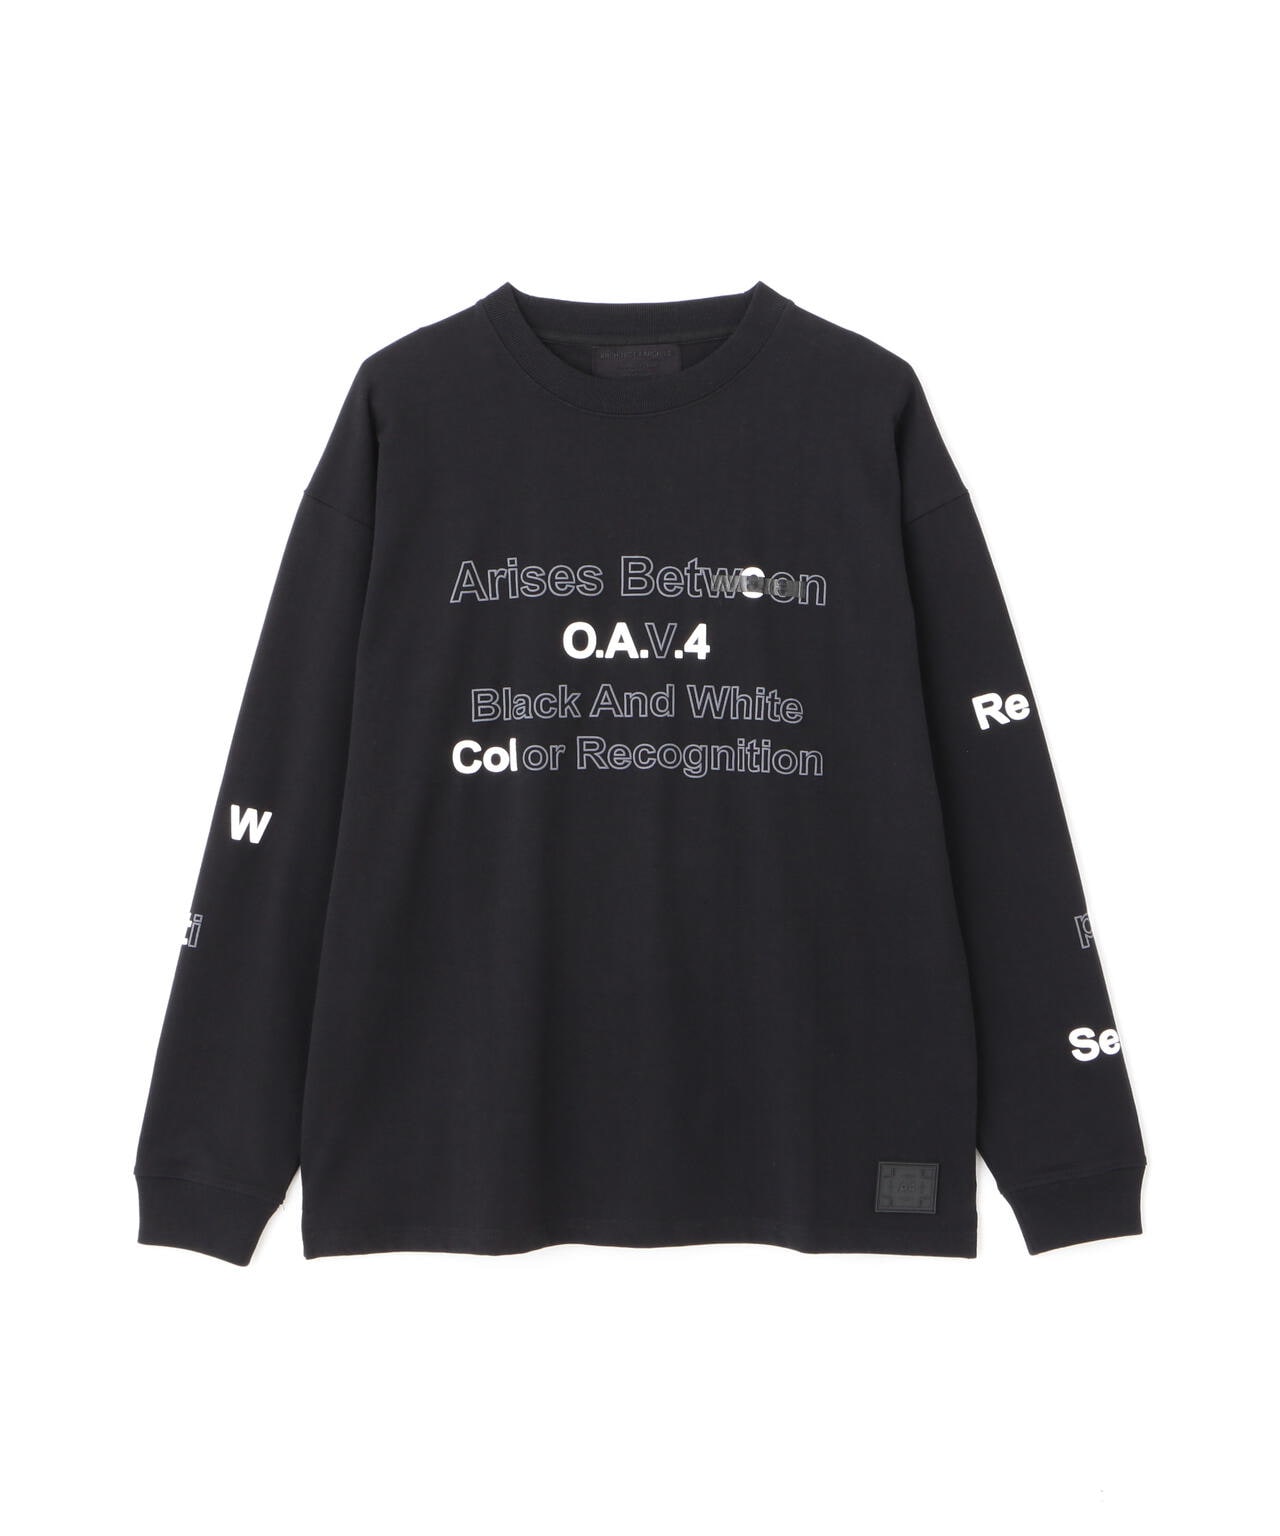 最新デザインの AFFA ロンT コレクターズアイテム Tシャツ/カットソー 